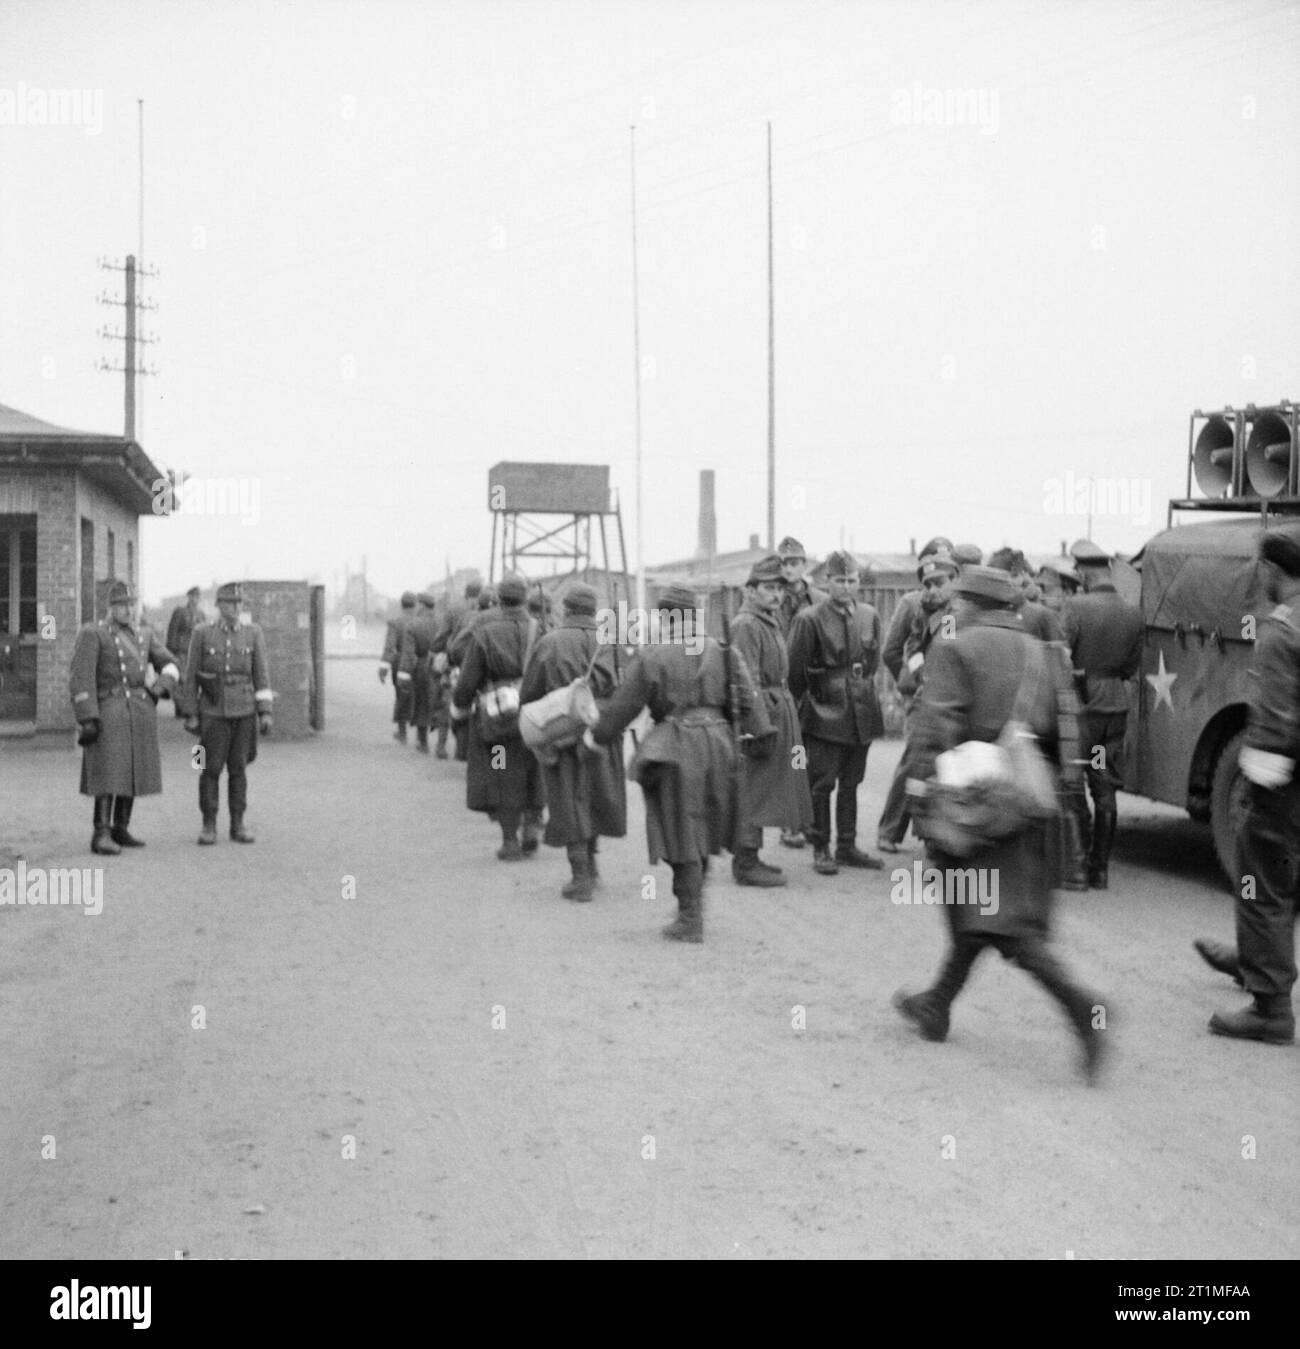 Die Befreiung des Konzentrationslagers Bergen-belsen, April 1945 die britische Armee kommt im Konzentrationslager Belsen an. Deutsche und ungarische Wachen stehen am Lagereingang, als deutsche Wehrmachtseinheiten (mit weißen Armbändern) im Rahmen des Waffenstillstandsabkommens mit den Briten vom 12. April 1945 in das Lager einmarschieren. Rechts ist ein Fahrzeug mit Lautsprechern der 14 Amplifier Unit, Intelligence Corps unter dem Kommando von LT Derrick Sington (Q103469181). Dieses Fahrzeug, begleitet von Fahrzeugen des 63. Anti Tank Regiment, Royal Artillery, war das erste, das das Lager betreten und wurde verwendet, um die zu informieren Stockfoto